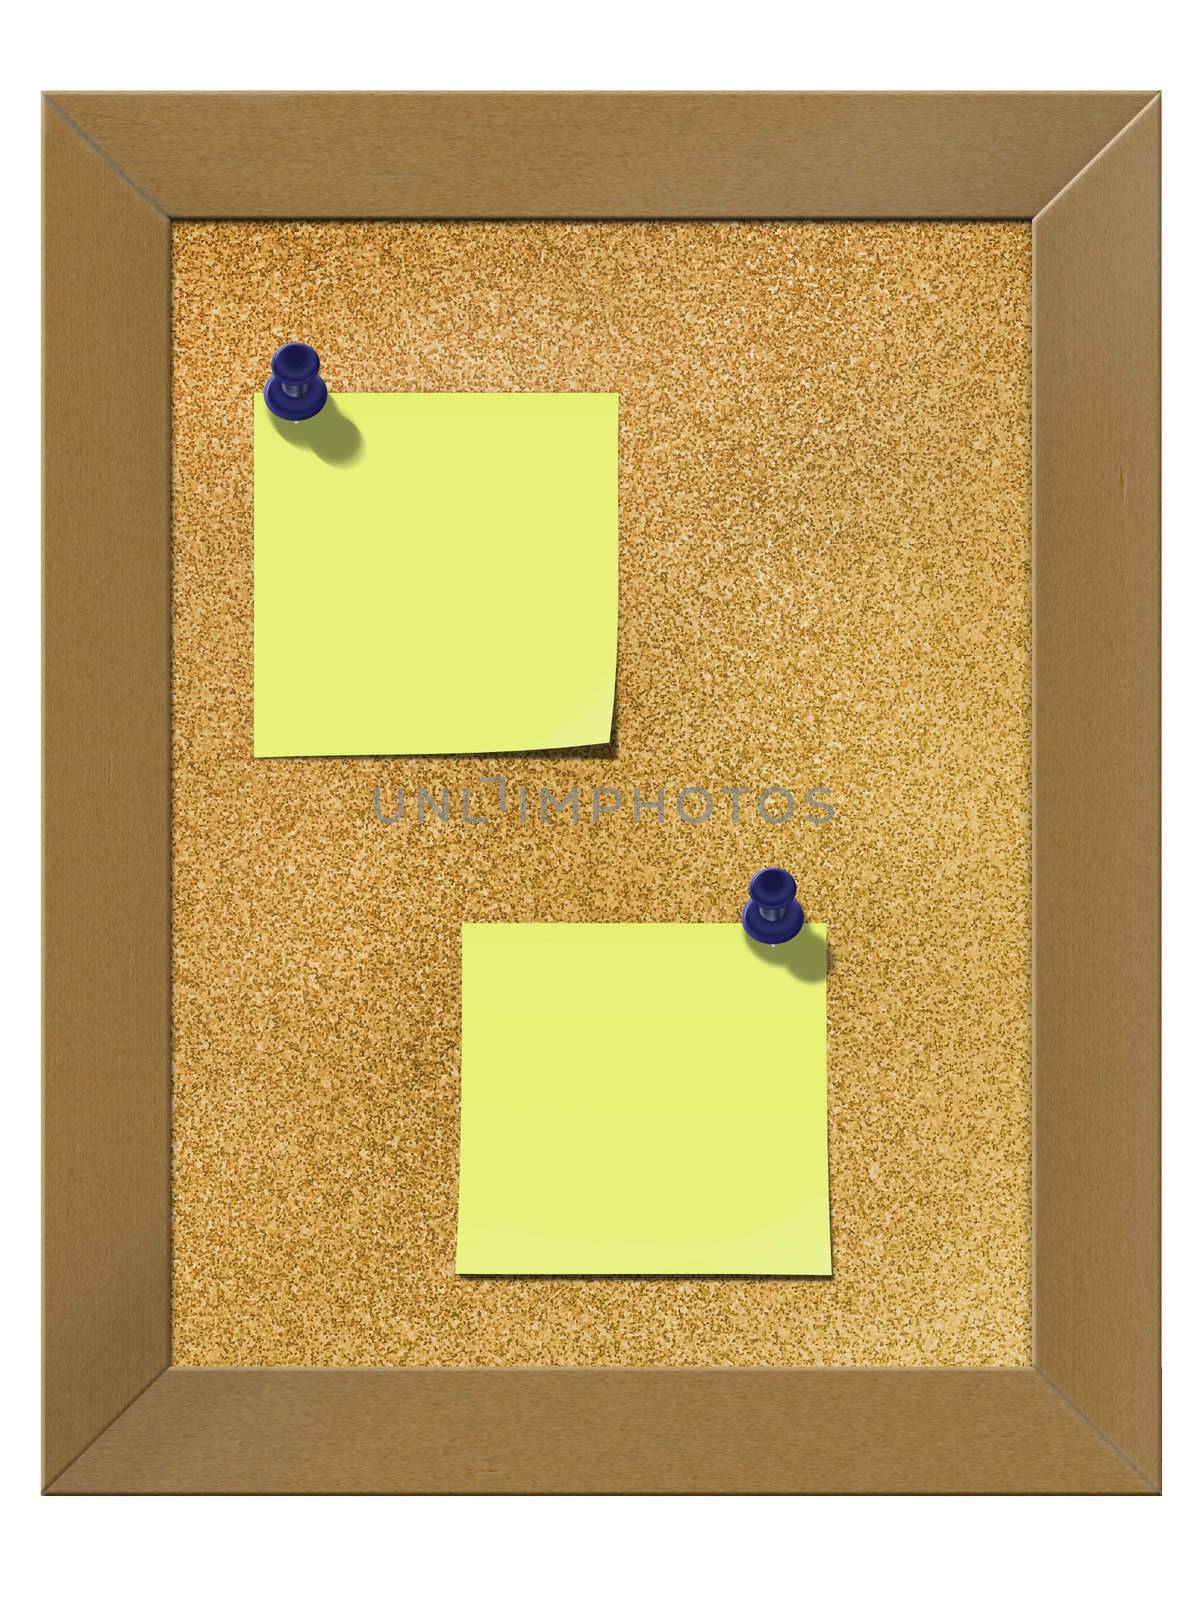 yellow sticker note on framed cork board